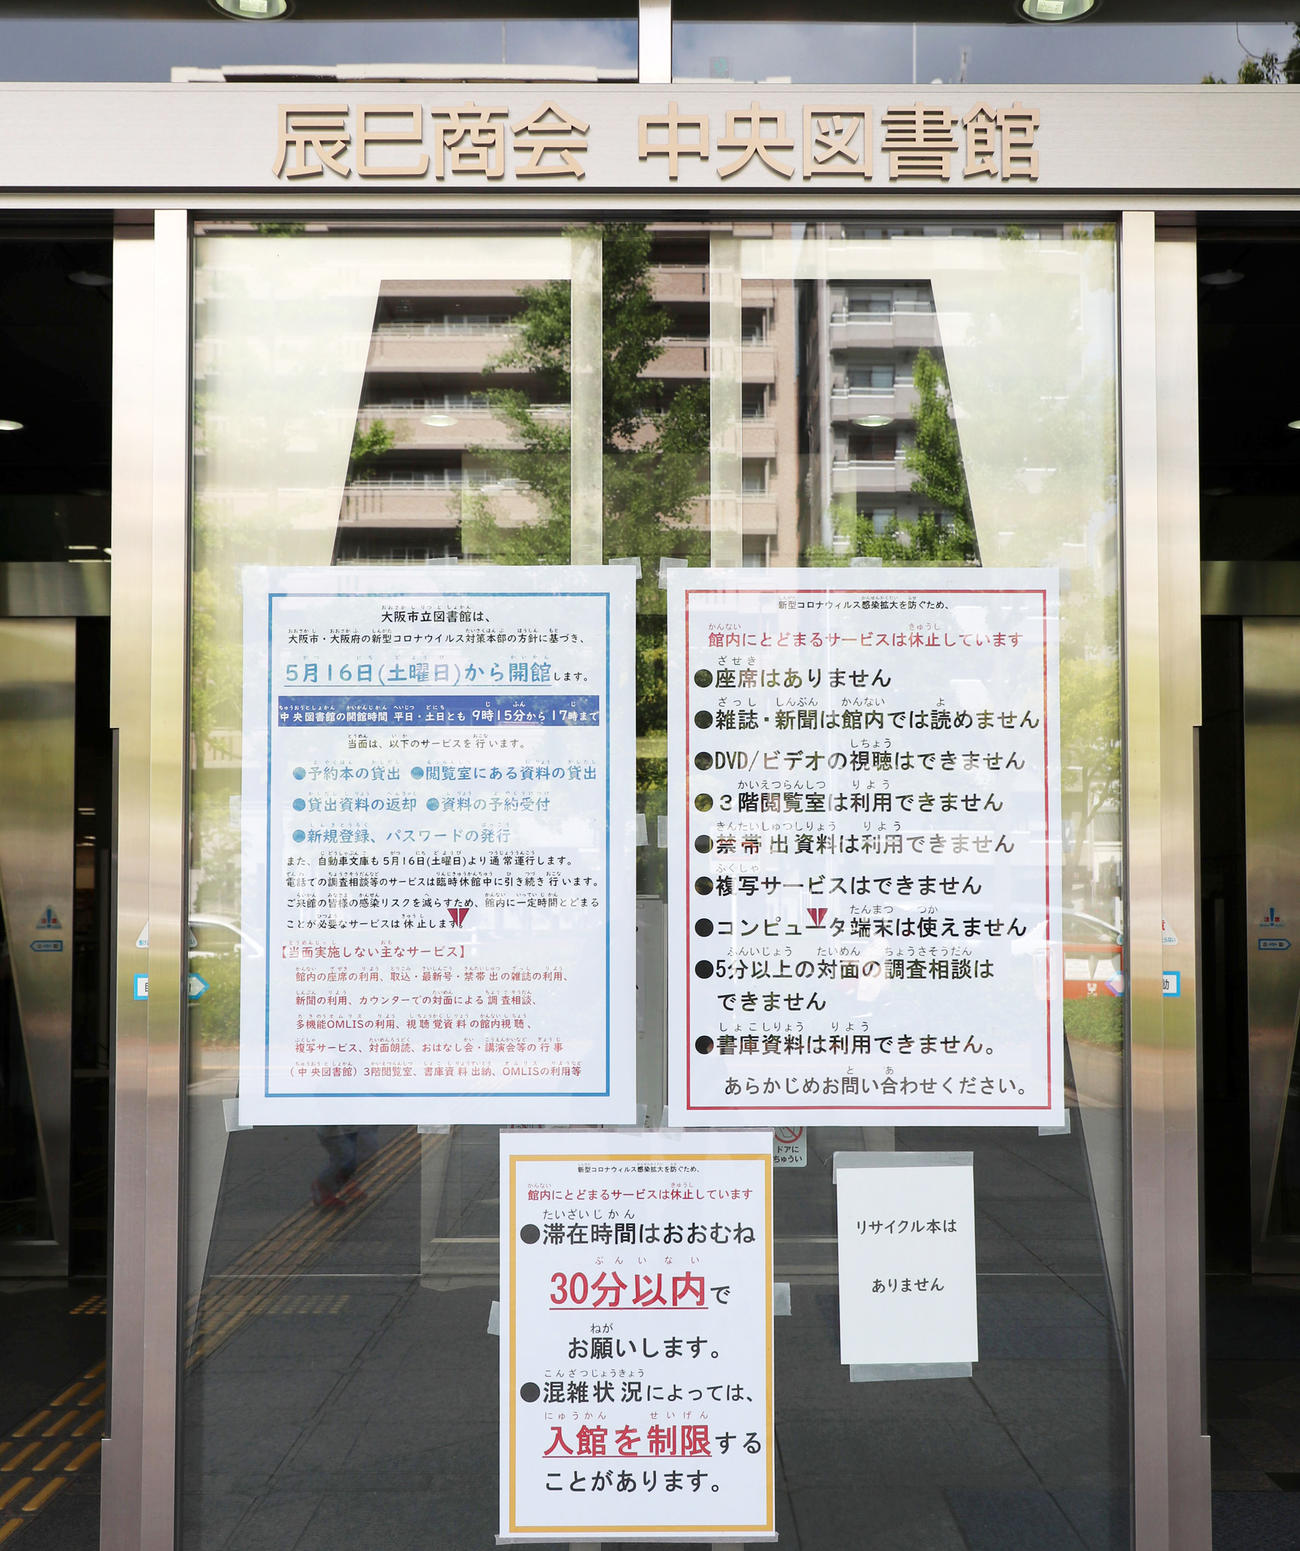 大阪市立中央図書館の入り口には16日からの開館とともに滞在時間30分以内など、コロナ対策の案内がかかれている（撮影・加藤哉）